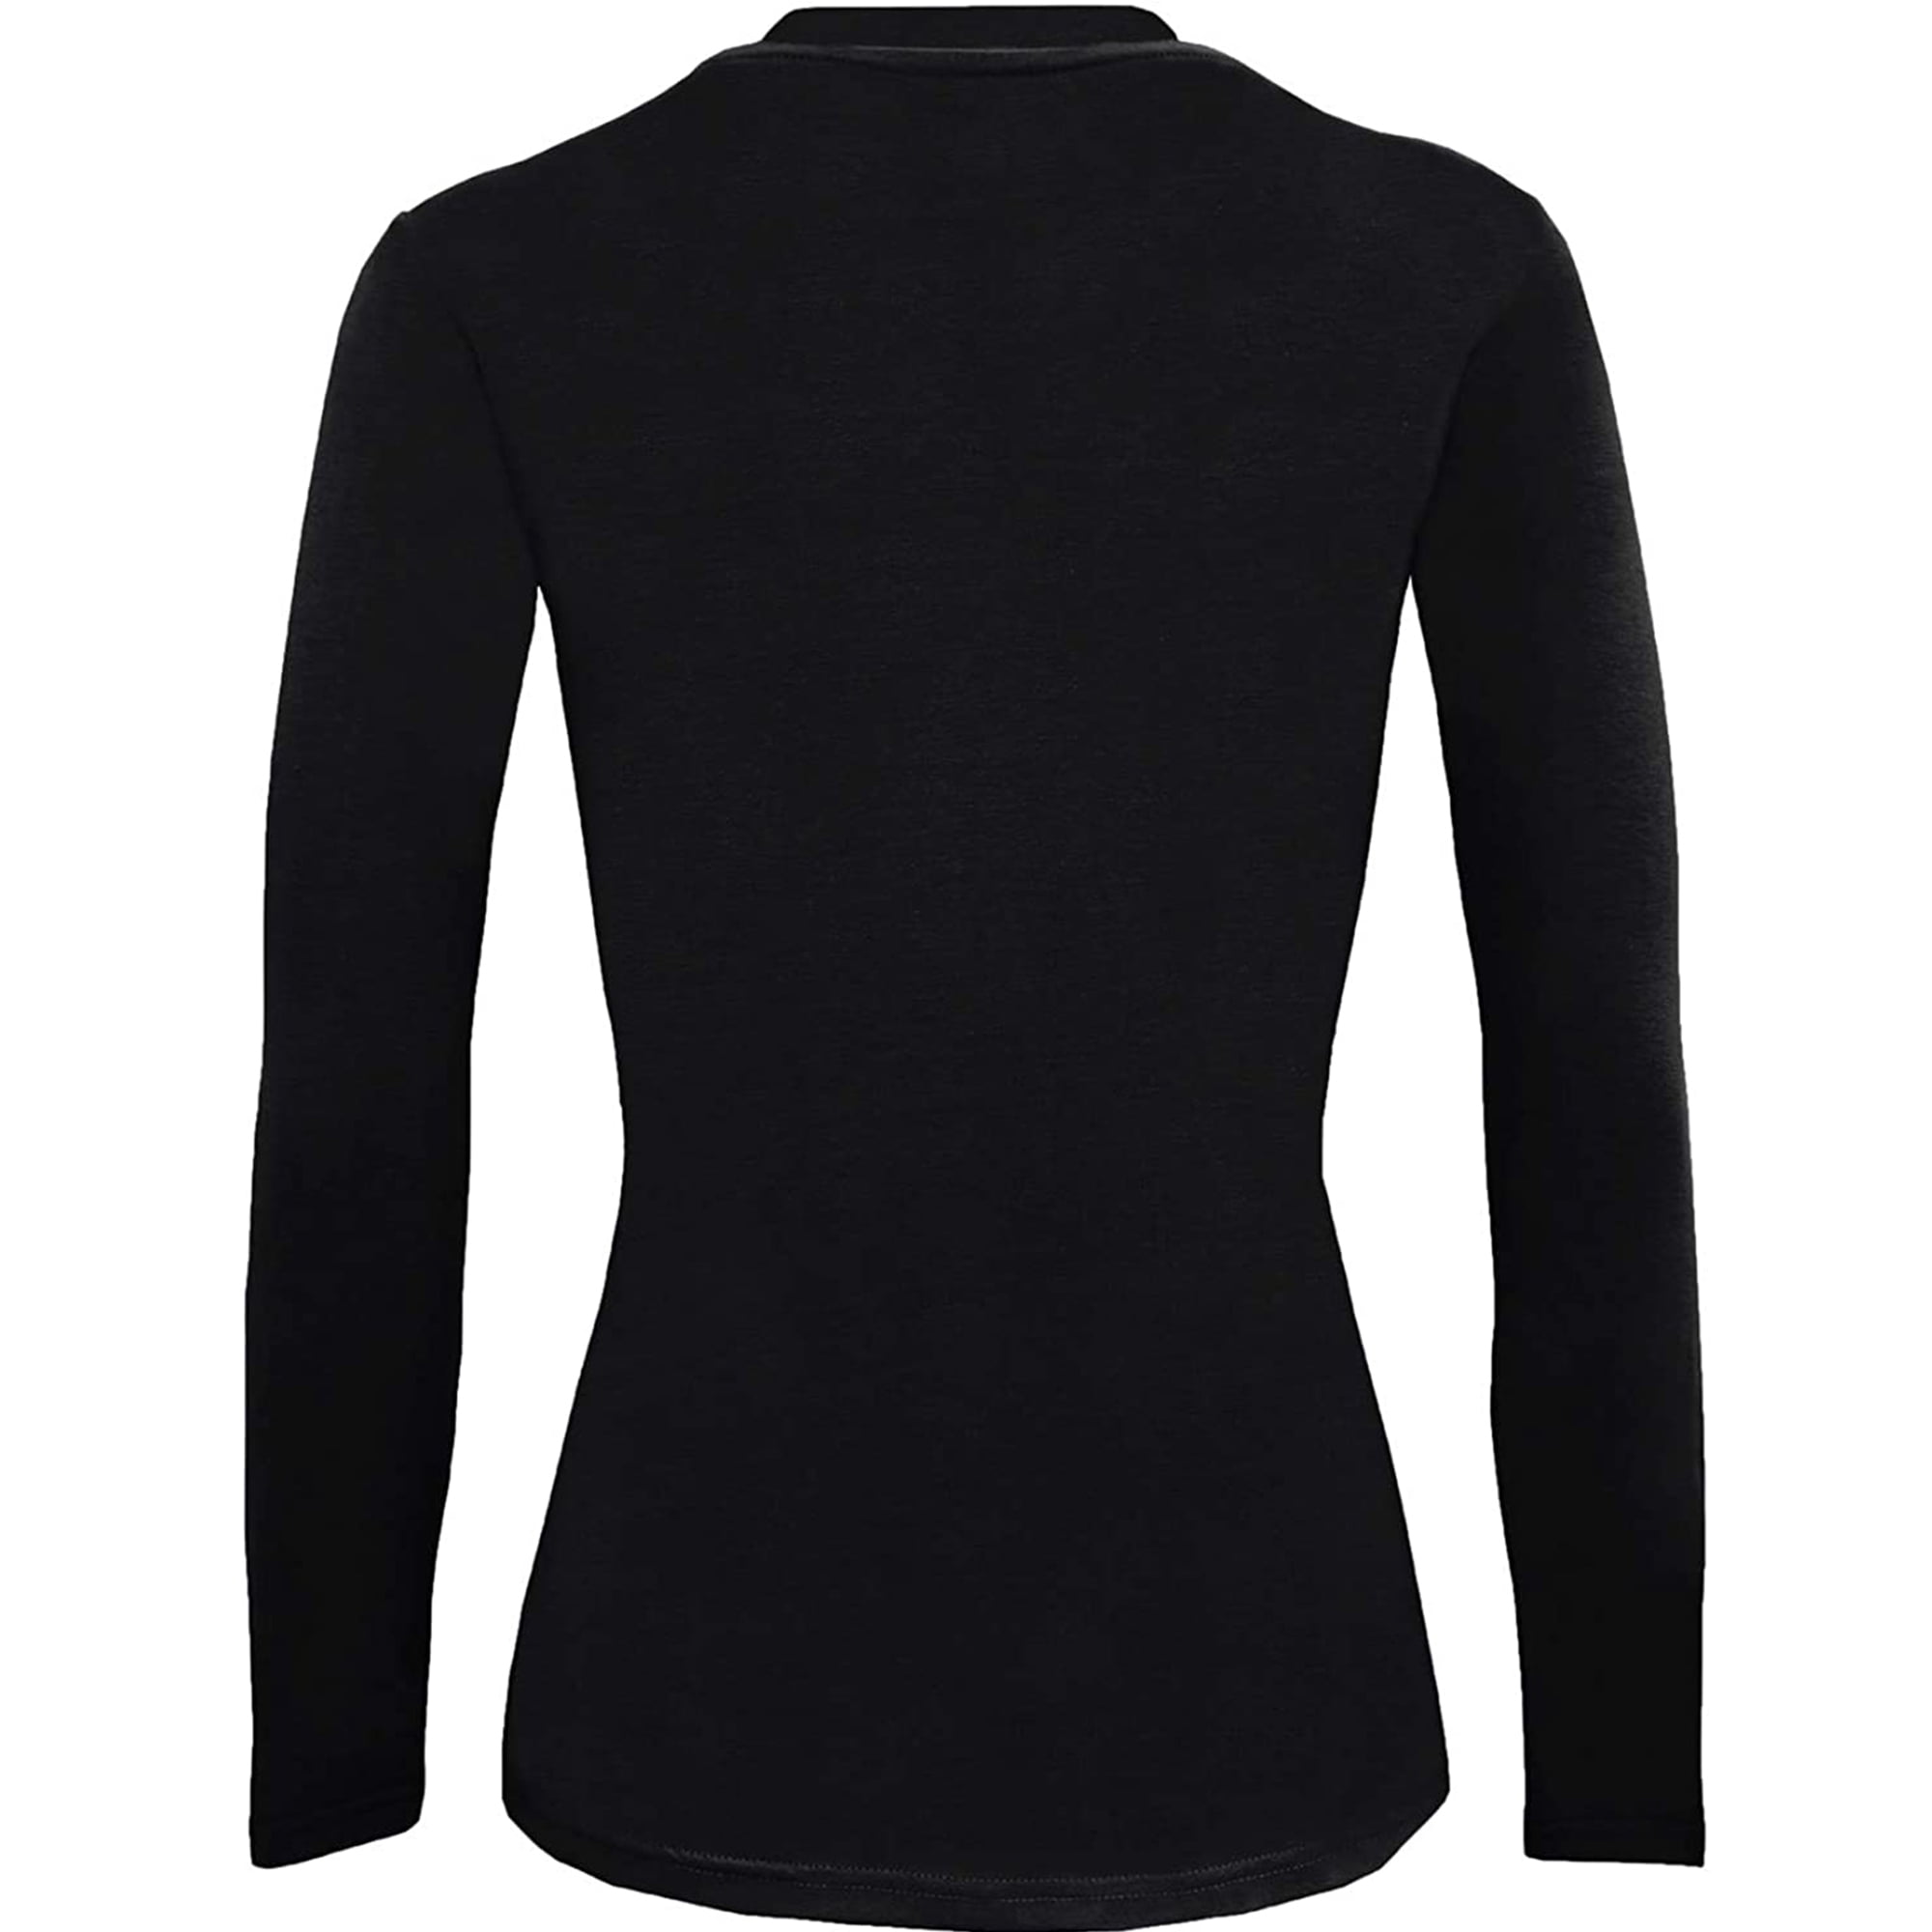 Long Black Neck T for Sleeve Crew Women, UnderScrubs Medium Natural Uniforms Shirt